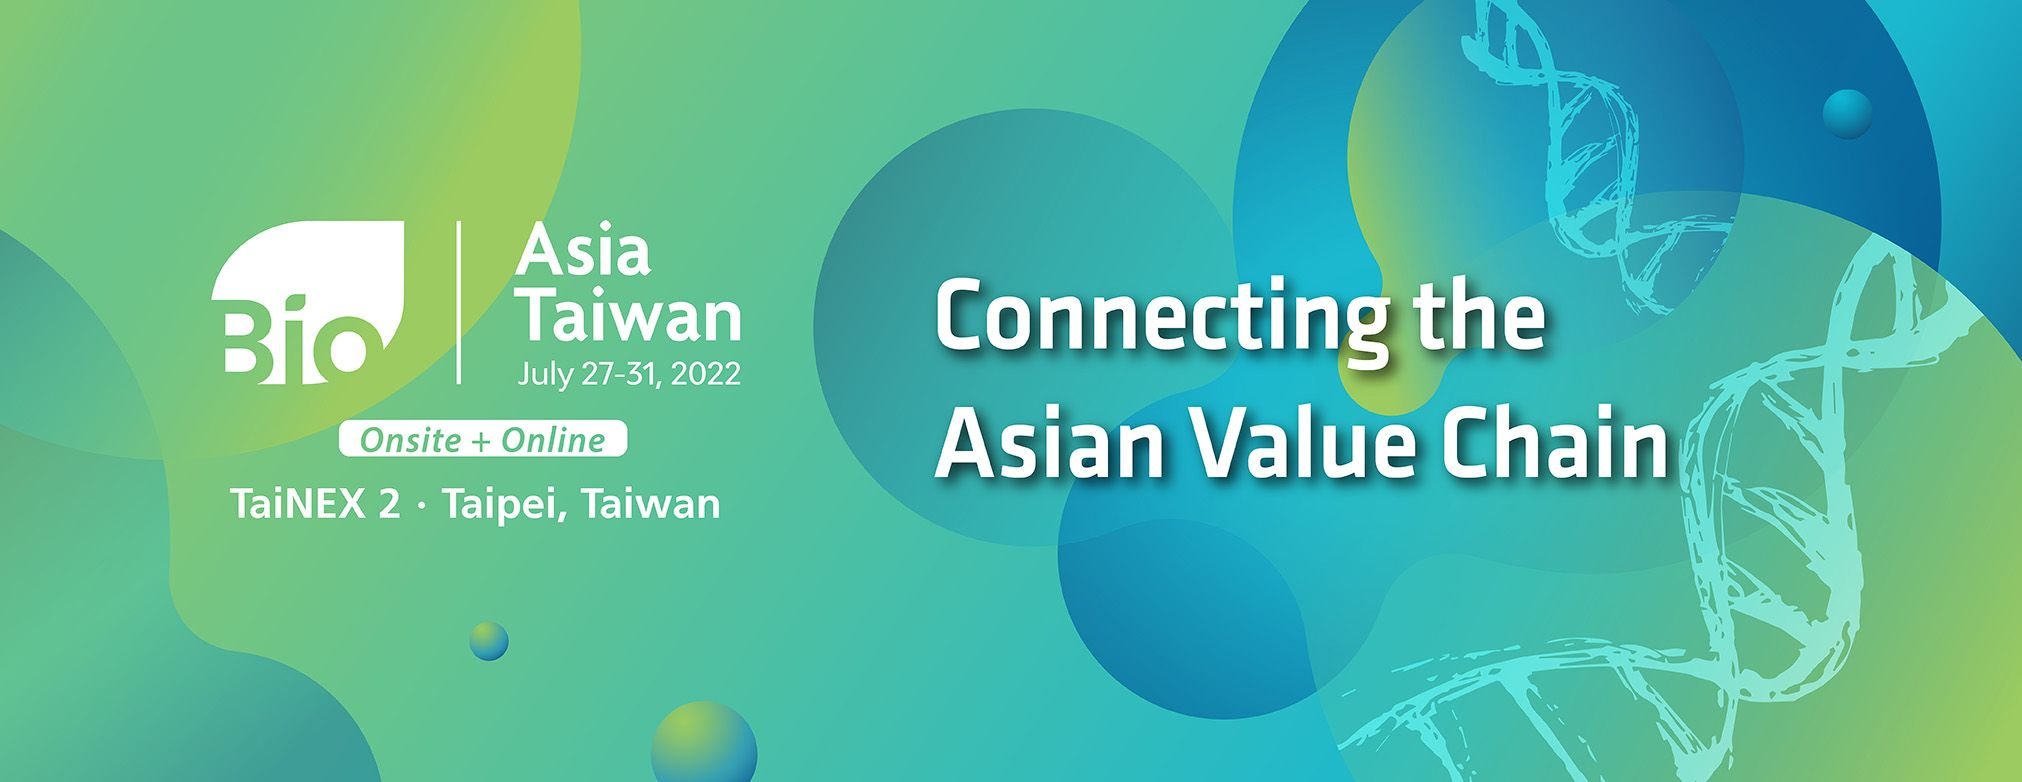 BioAsia Taiwan 2022